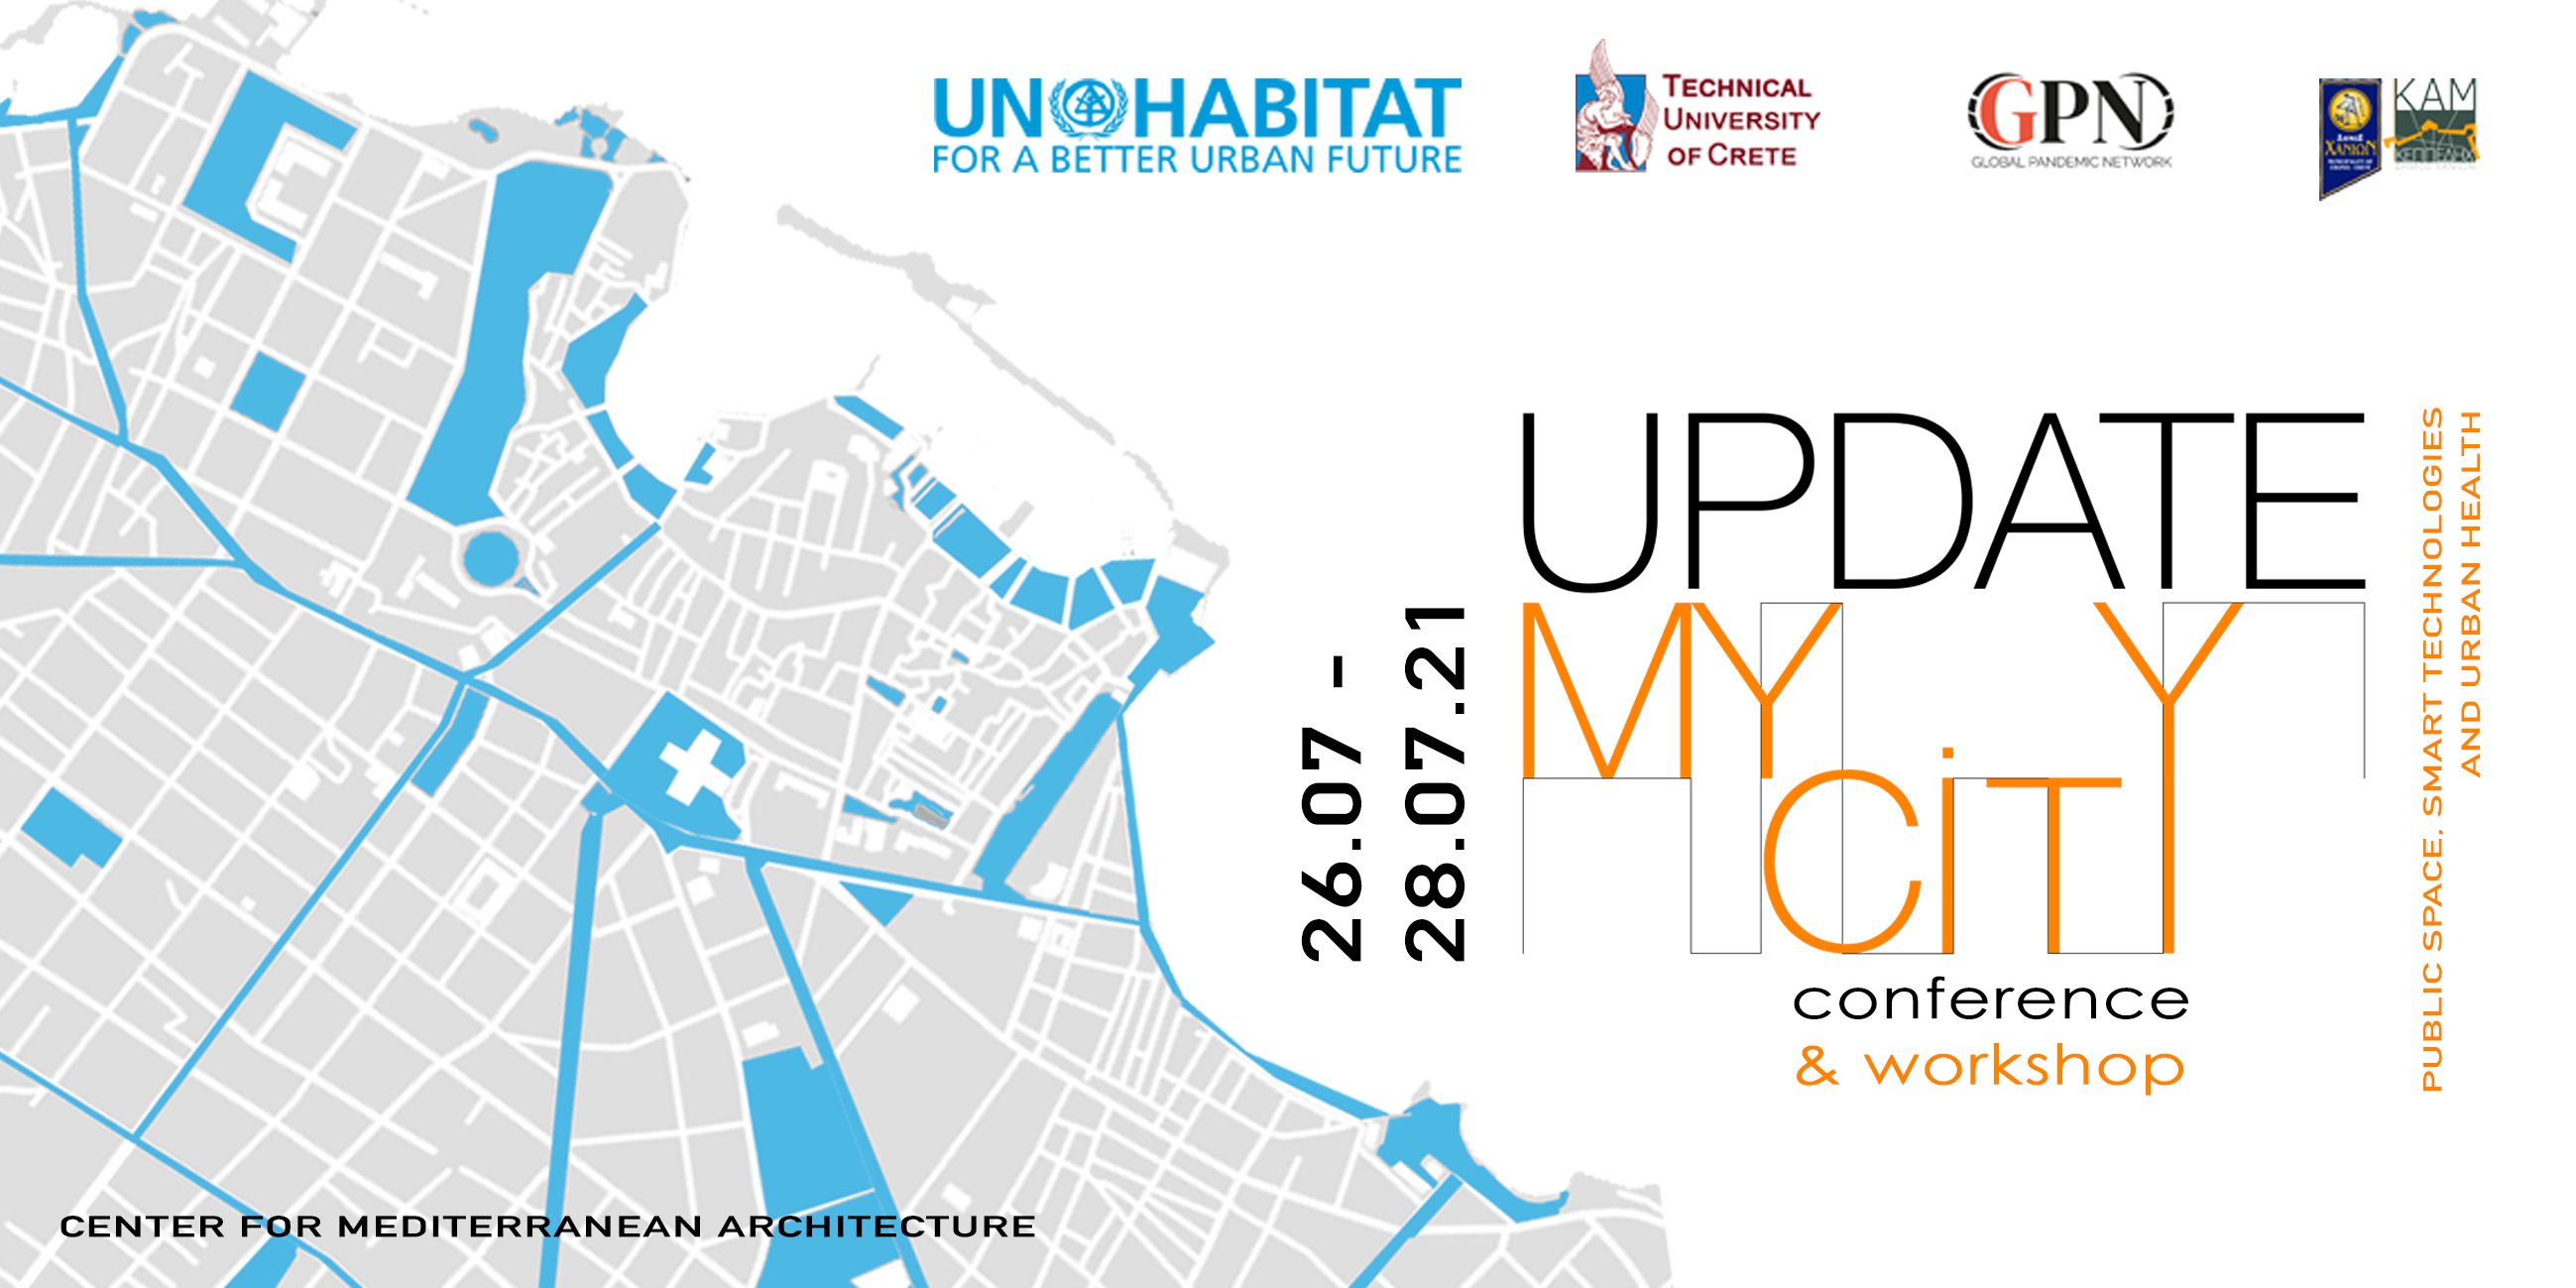 Συνέδριο και Workshop: “Update My City: Public Spaces, Smart Technologies and Urban Health